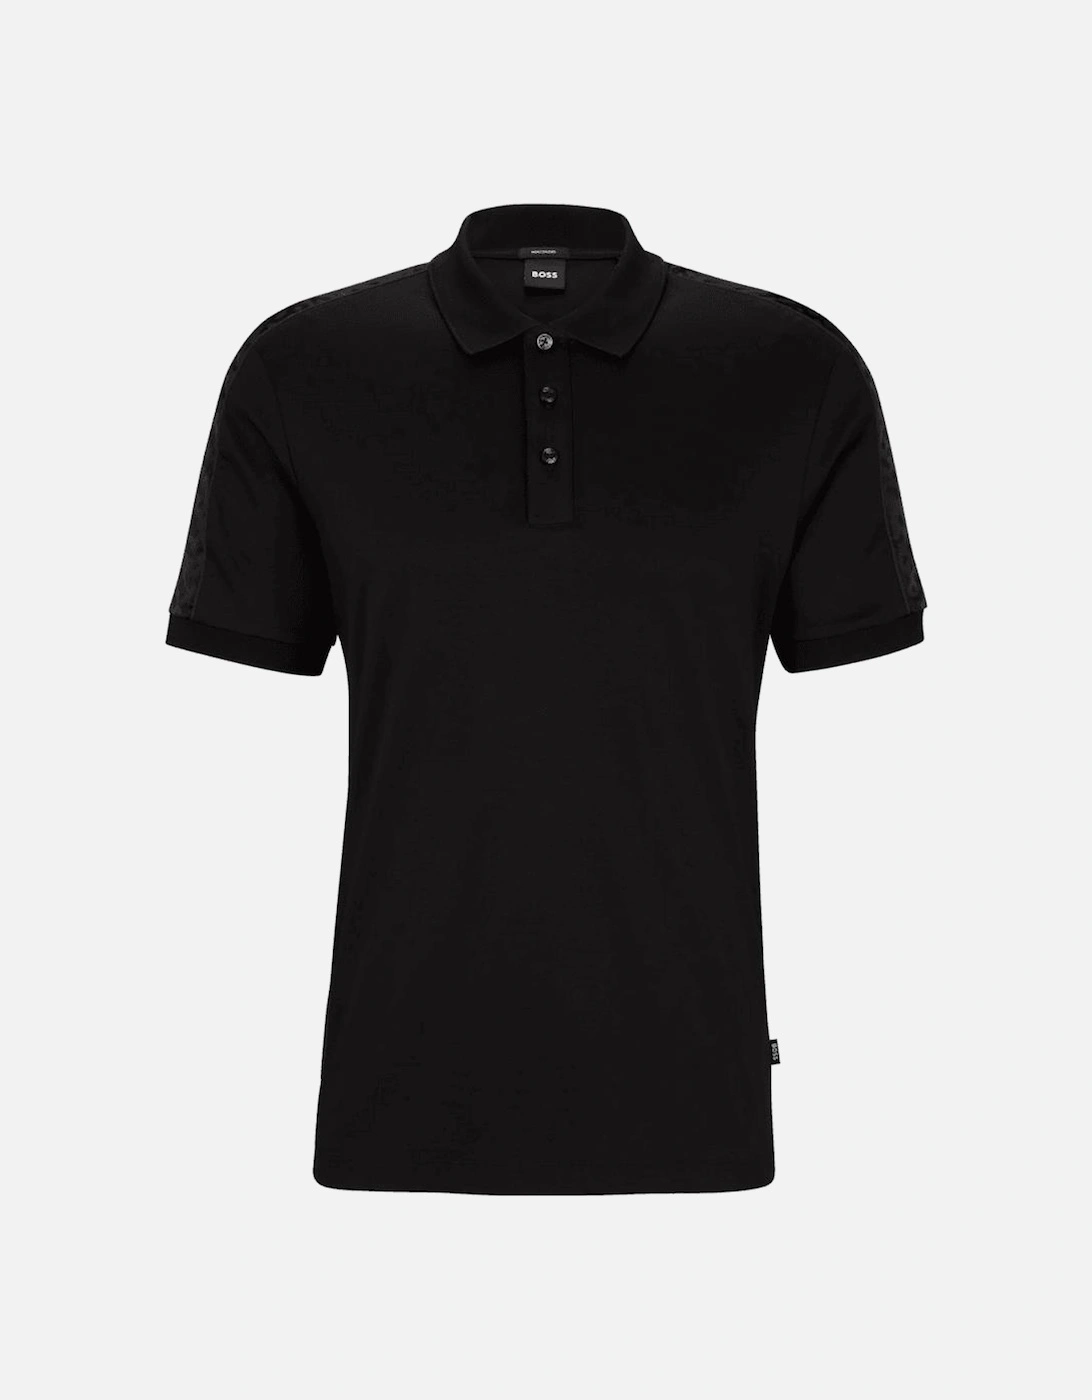 Parlay 189 Monogram Trim Black Polo Shirt, 4 of 3